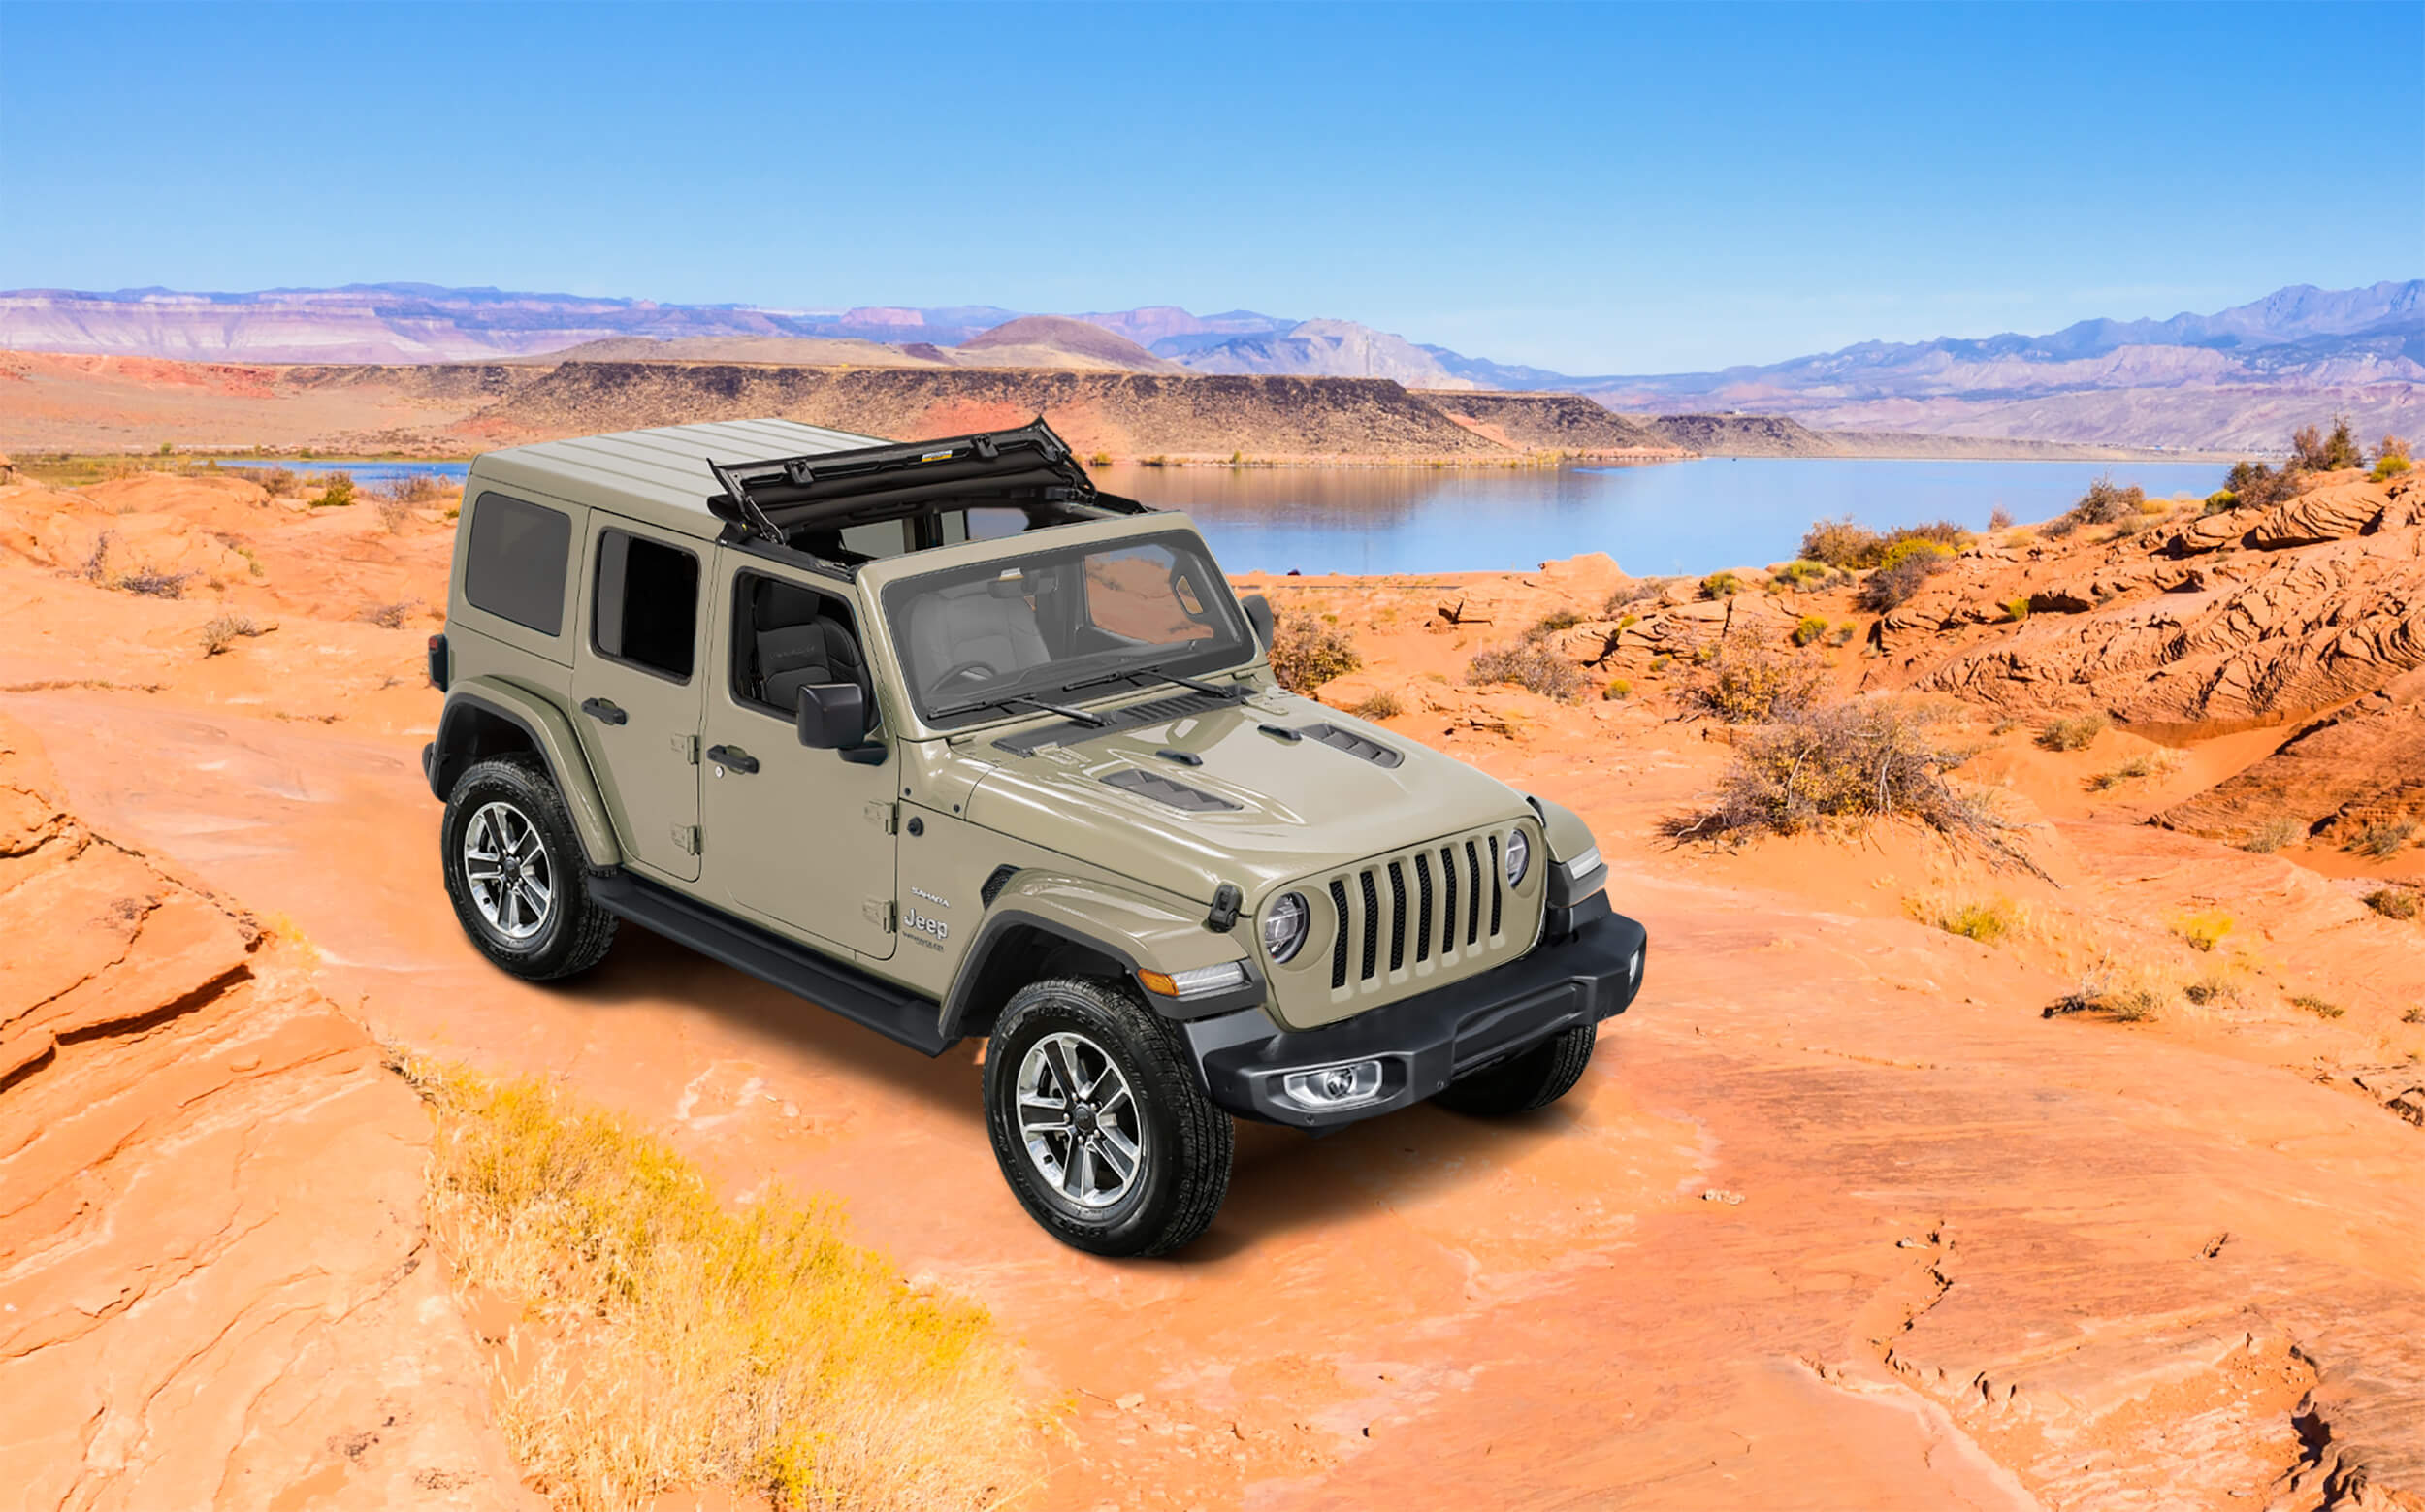 特別仕様車「Jeep® Wrangler Limited Edition with Sunrider Flip Top for Hardtop」を発売  | Stellantis ジャパン株式会社